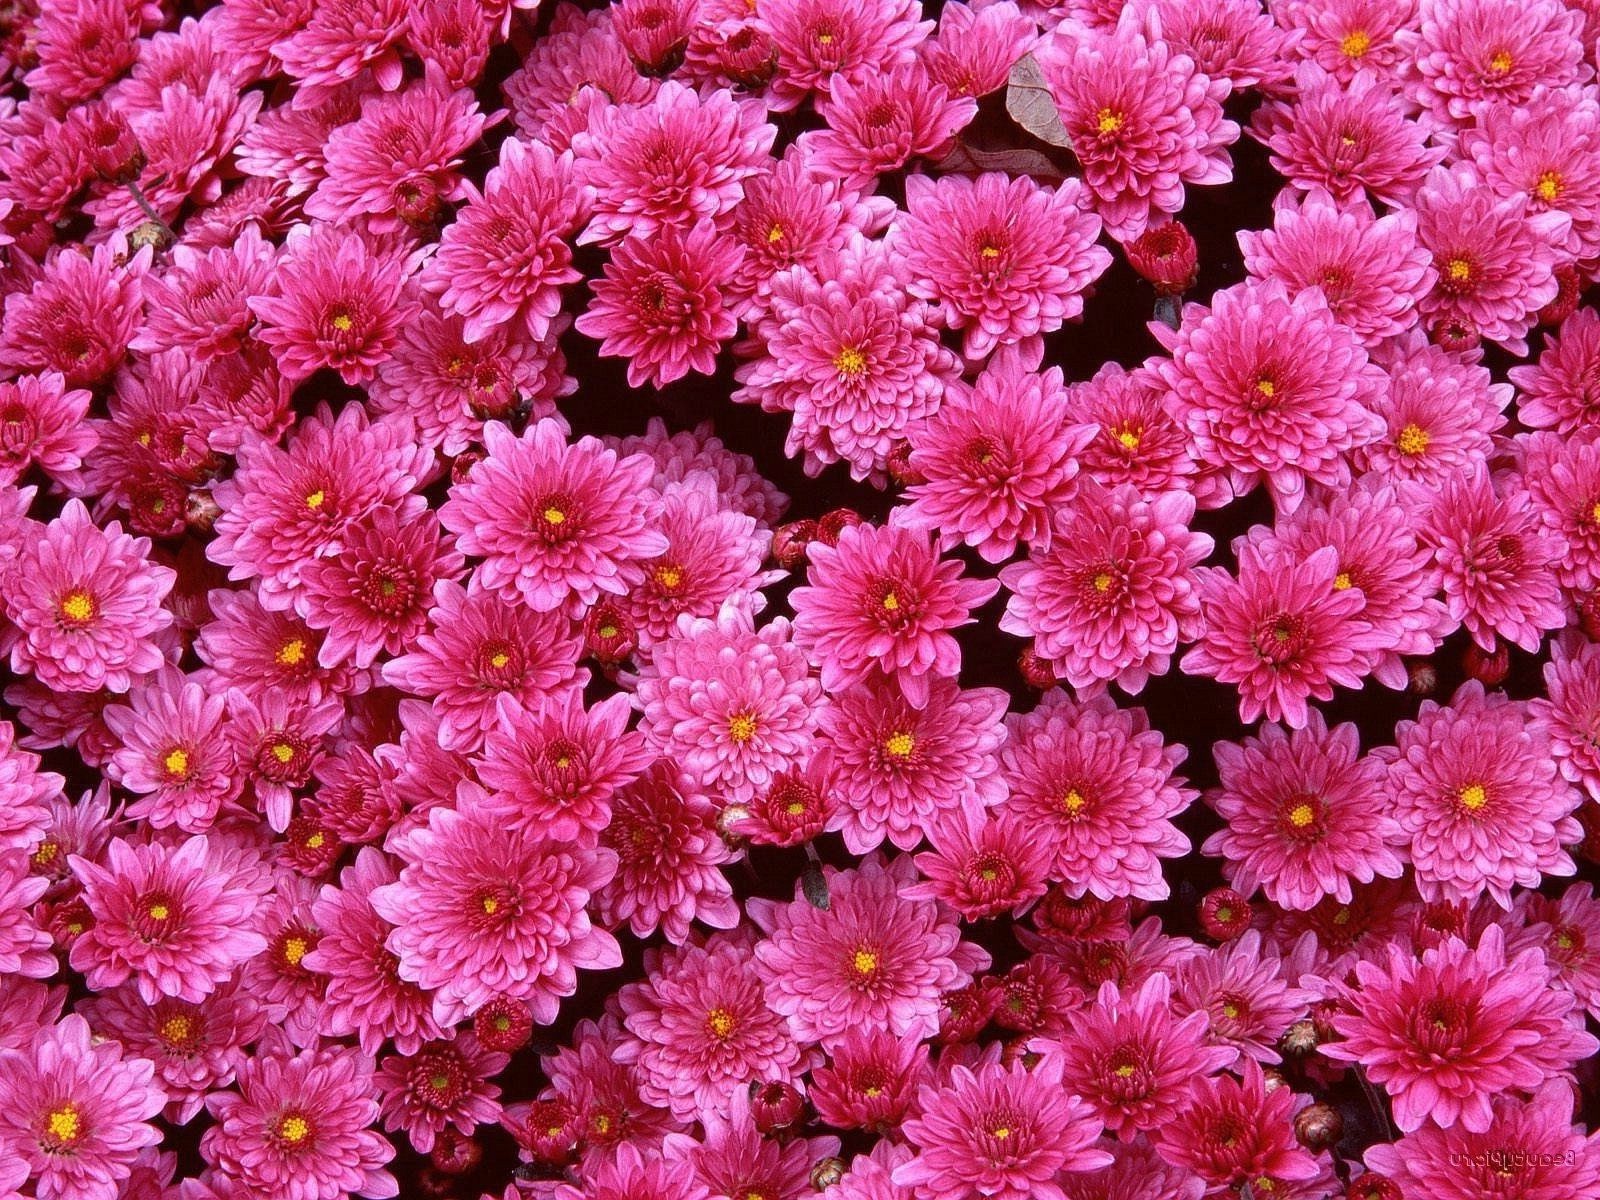 хризантемы цветок природа флора цветочные цвет лето лепесток сад красивые блюминг яркий украшения крупным планом яркие лист